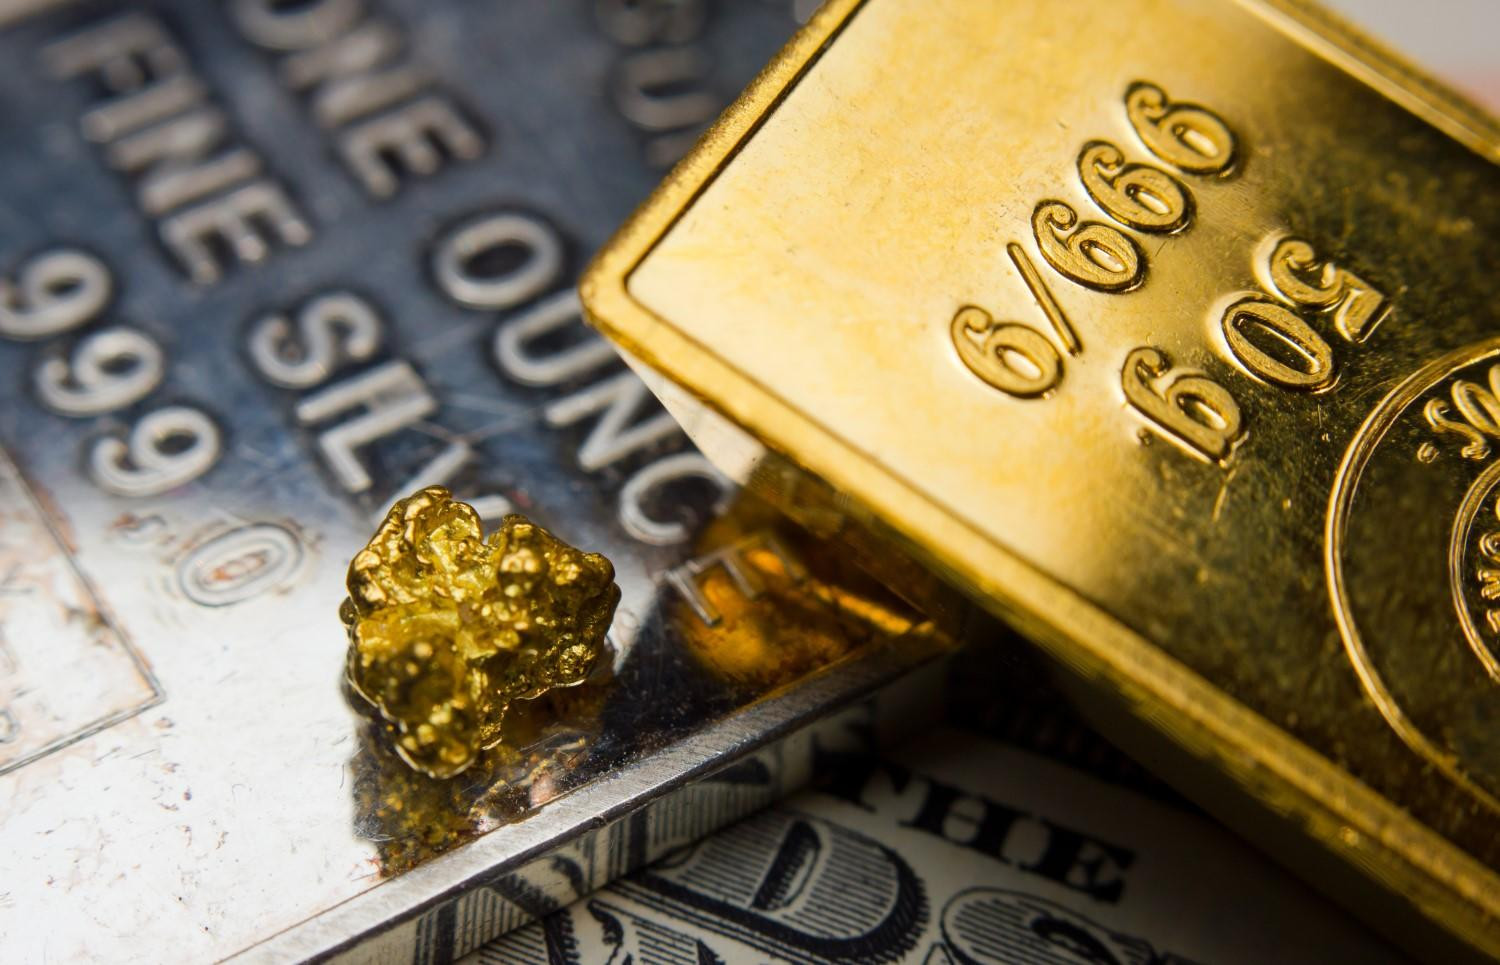 Ветеран Уолл-стрит Питер Буквар прогнозирует двукратный рост золота и серебра 